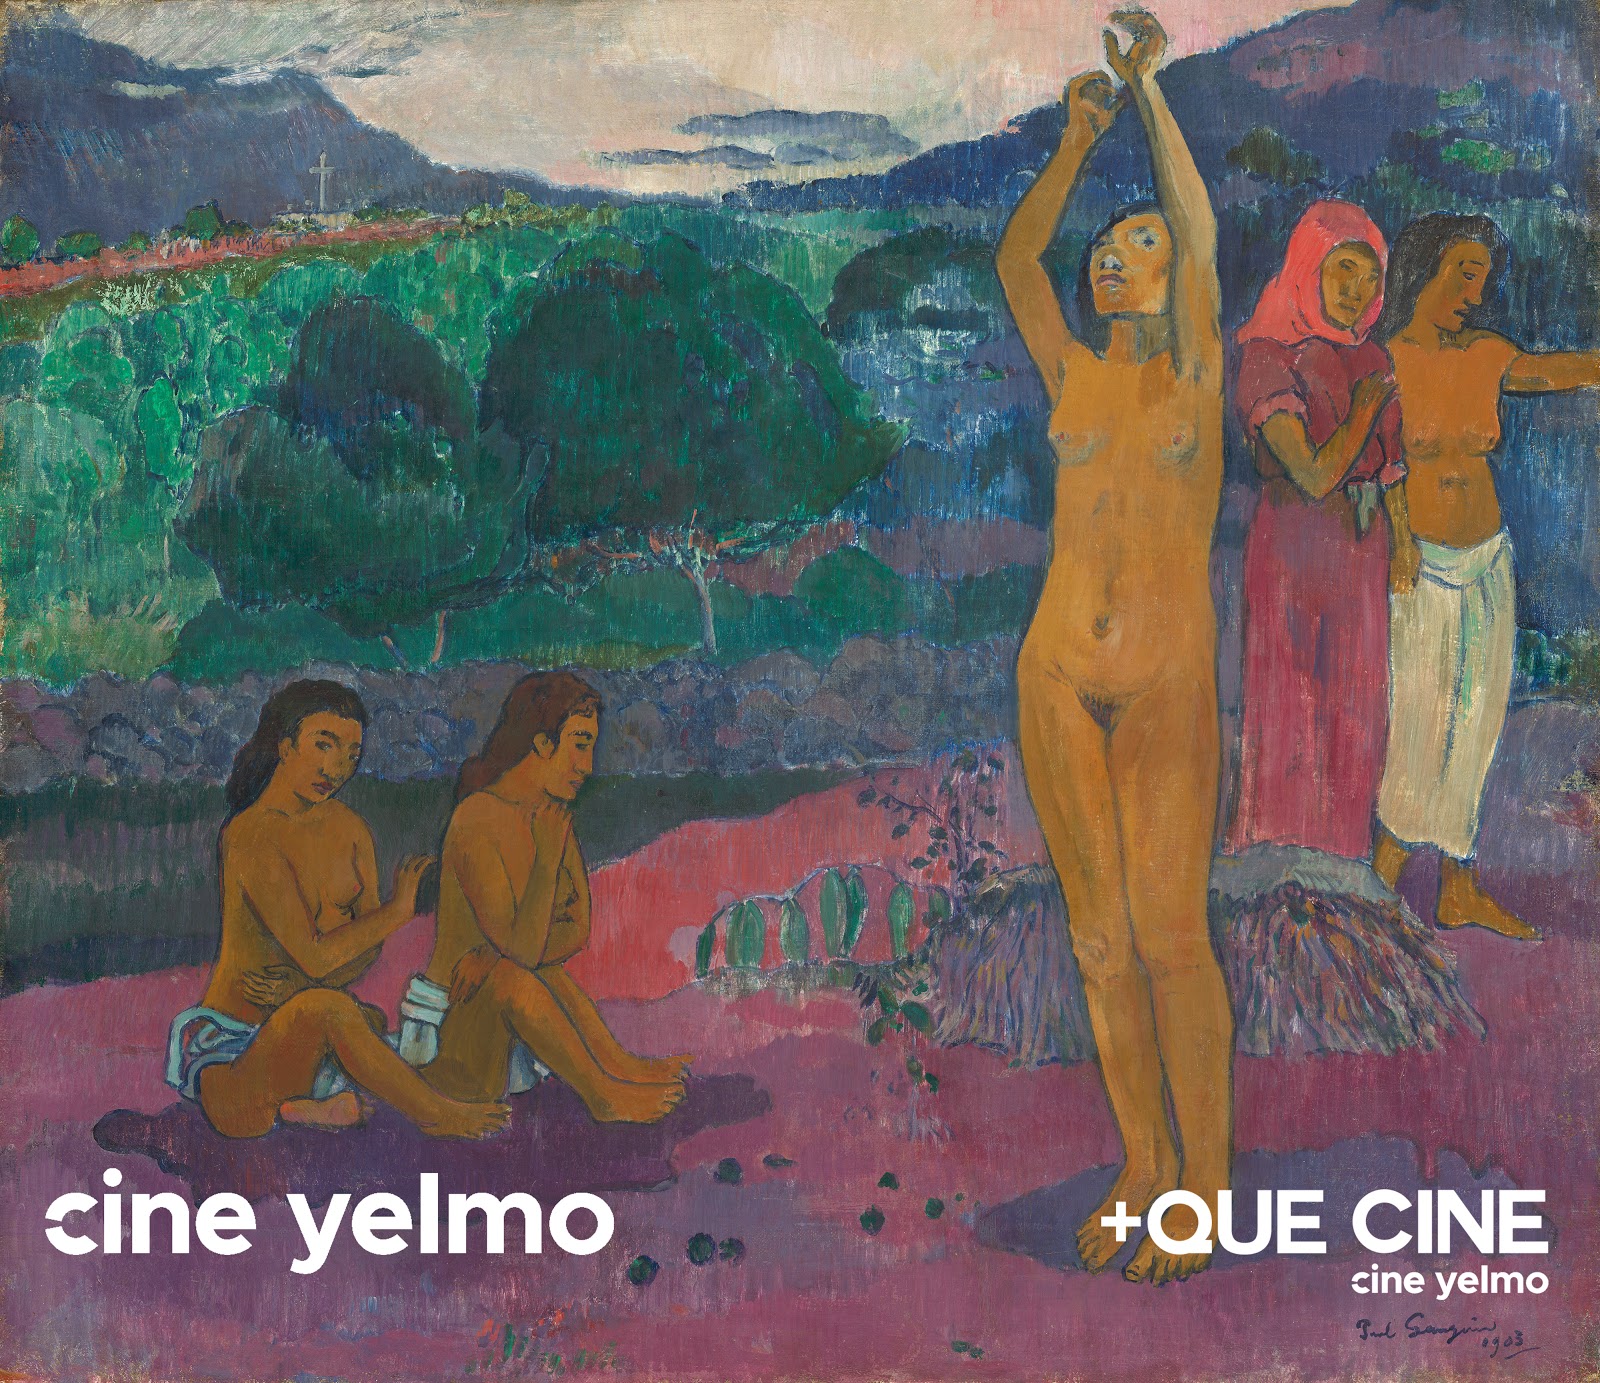 El arte de Gauguin en Tahití y Frida: Viva la vida en Cine Yelmo gracias a +Que Cine, su ventana de contenidos alternativos